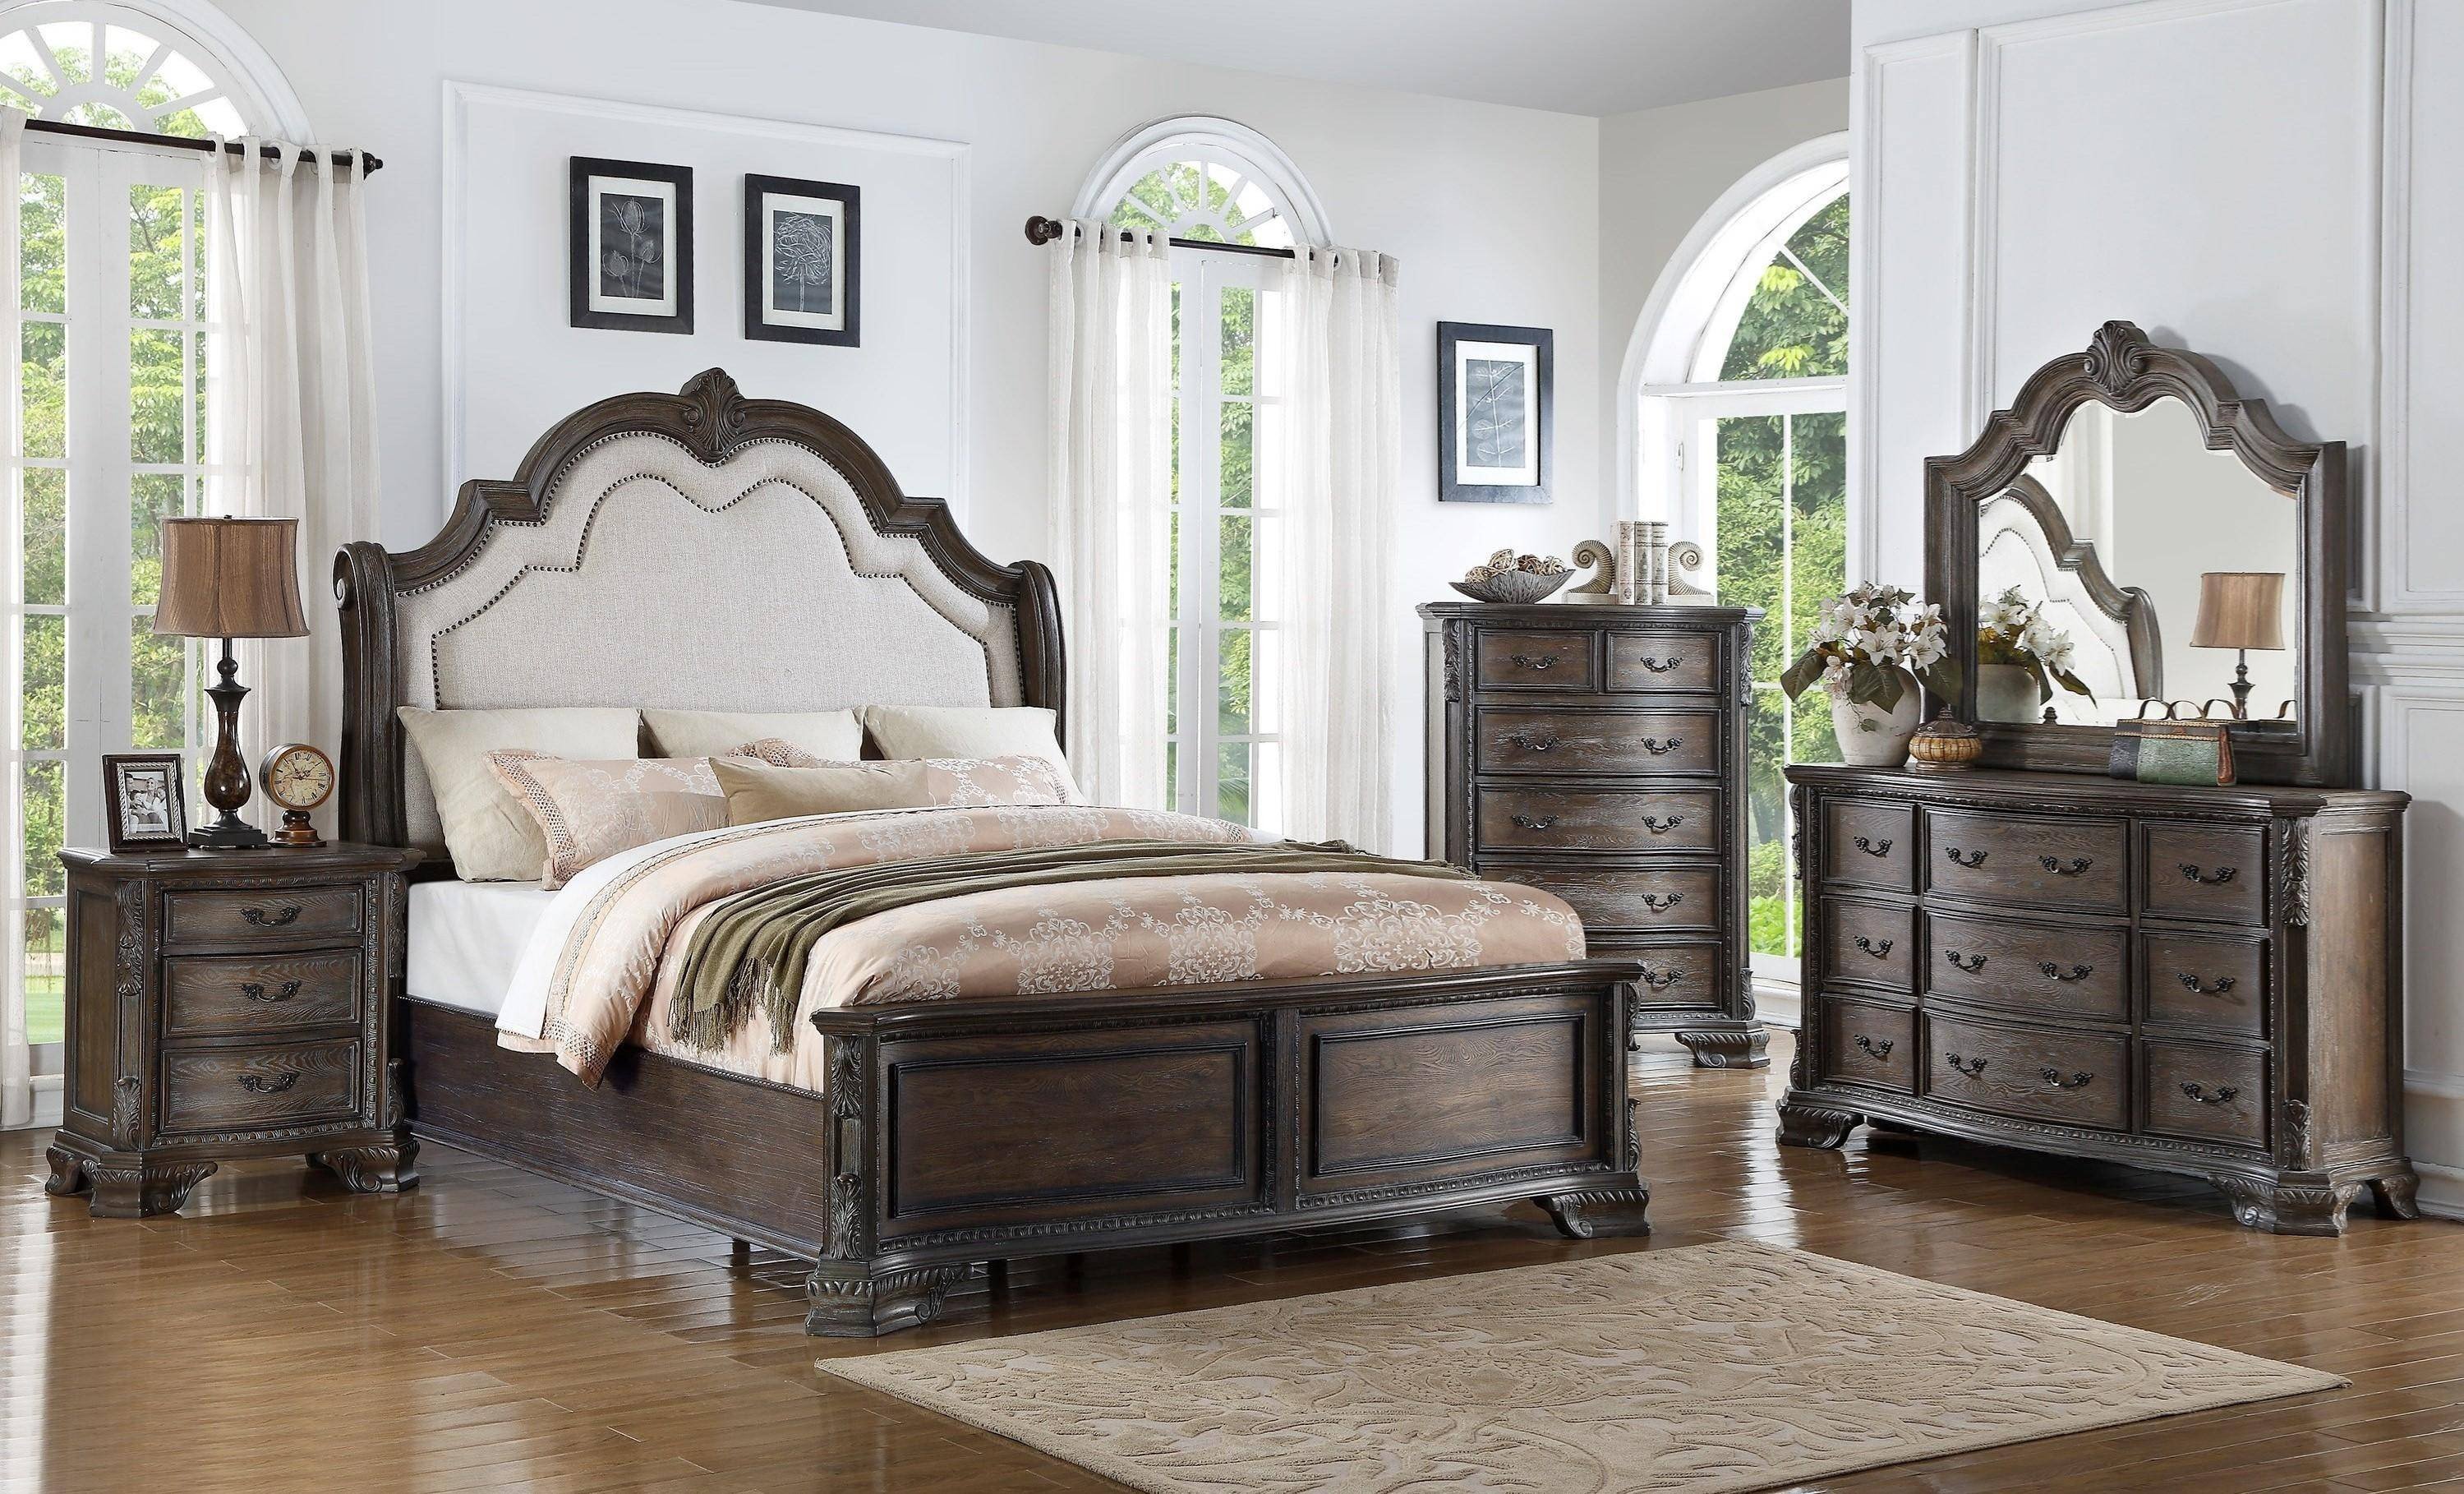 king bedroom furniture set under 1000